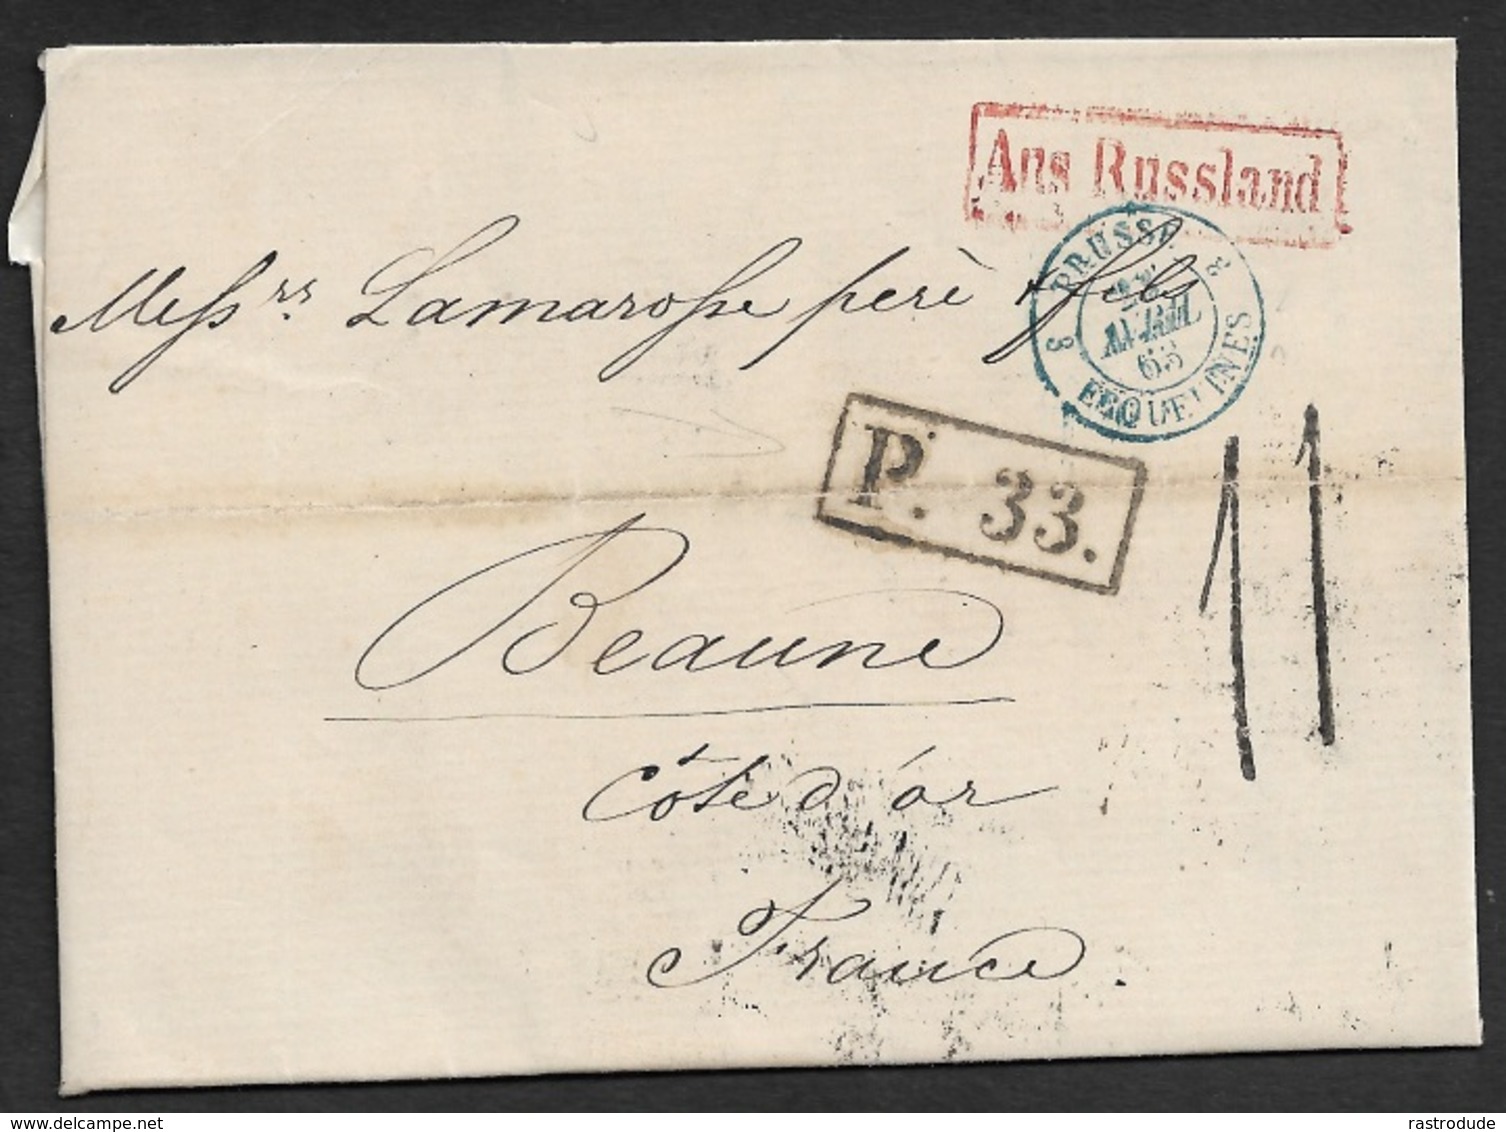 1863 - LAC - ST. PETERSBOURG A BEAUNE - AUS RUSSLAND - Entrée PRUSSE ERQUETINES - P.33 Taxe 11 - Plusiers Cachet Transit - 1849-1876: Période Classique